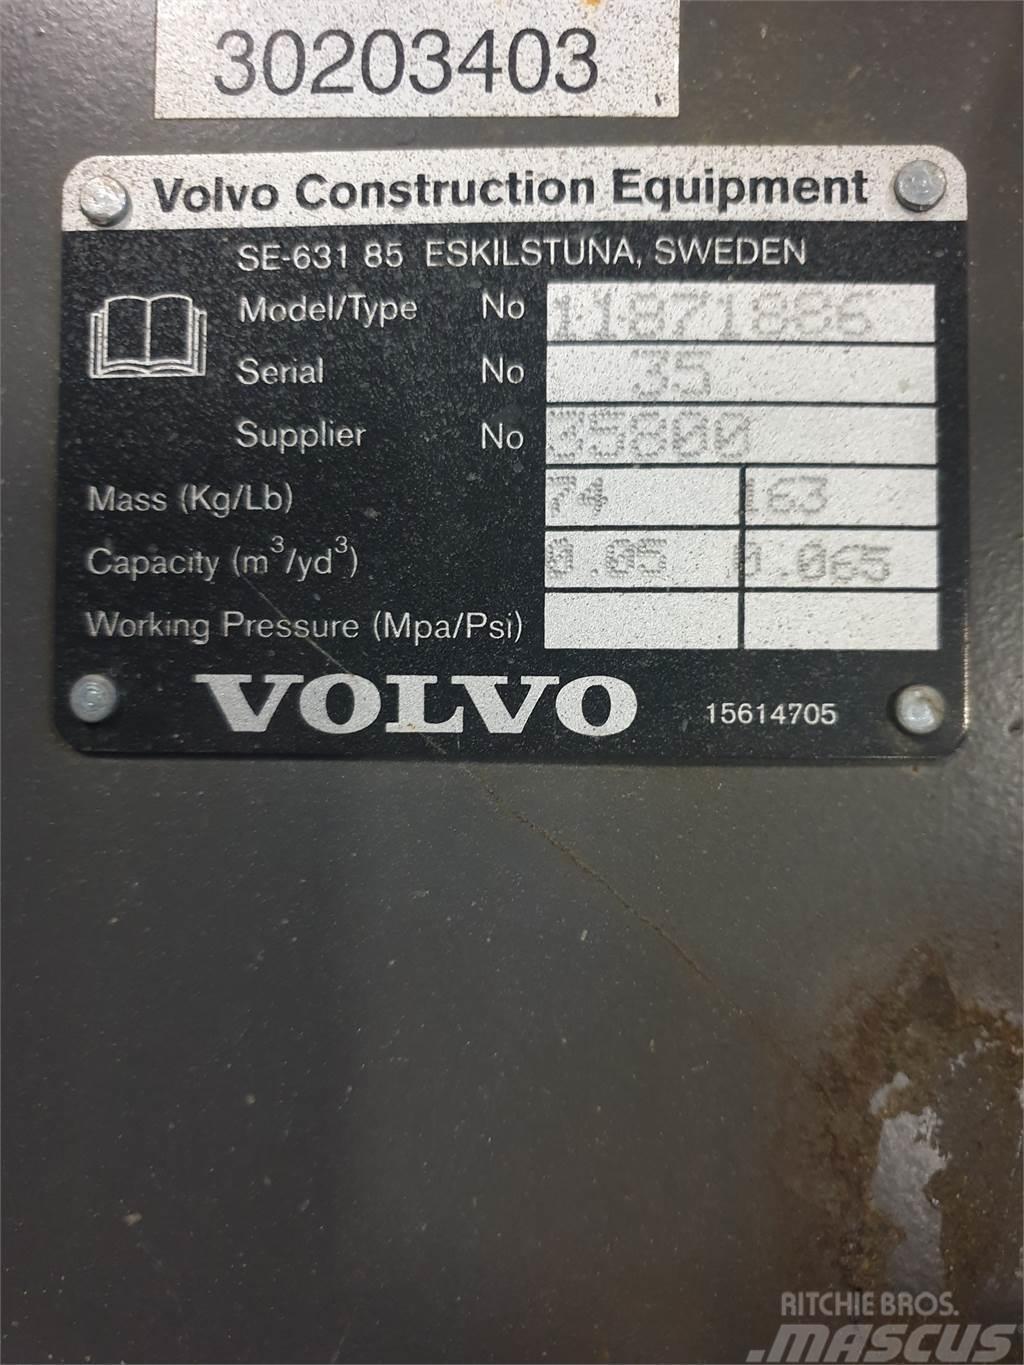 Volvo Kabelskopa S40 300mm Κουβάδες